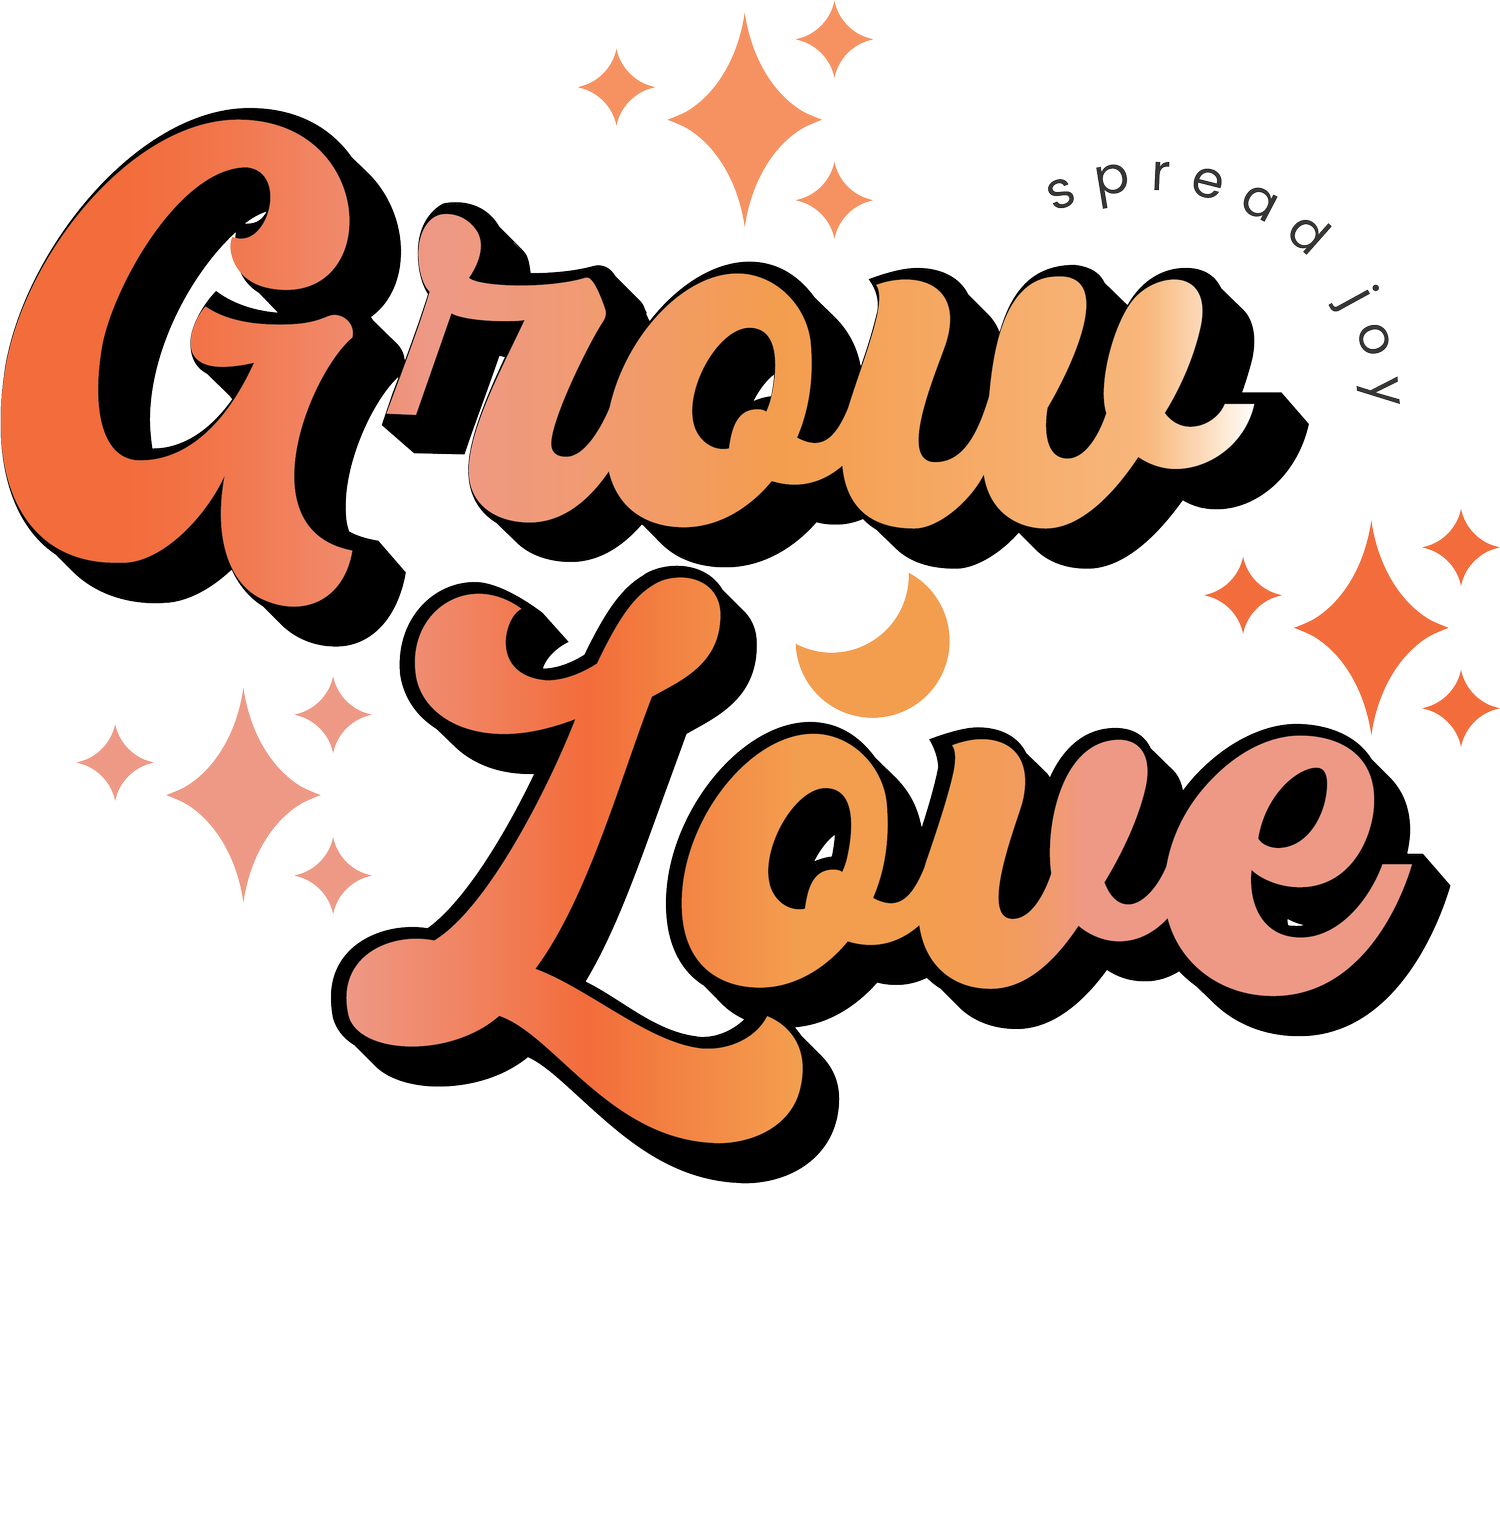 The Grow Love Co.